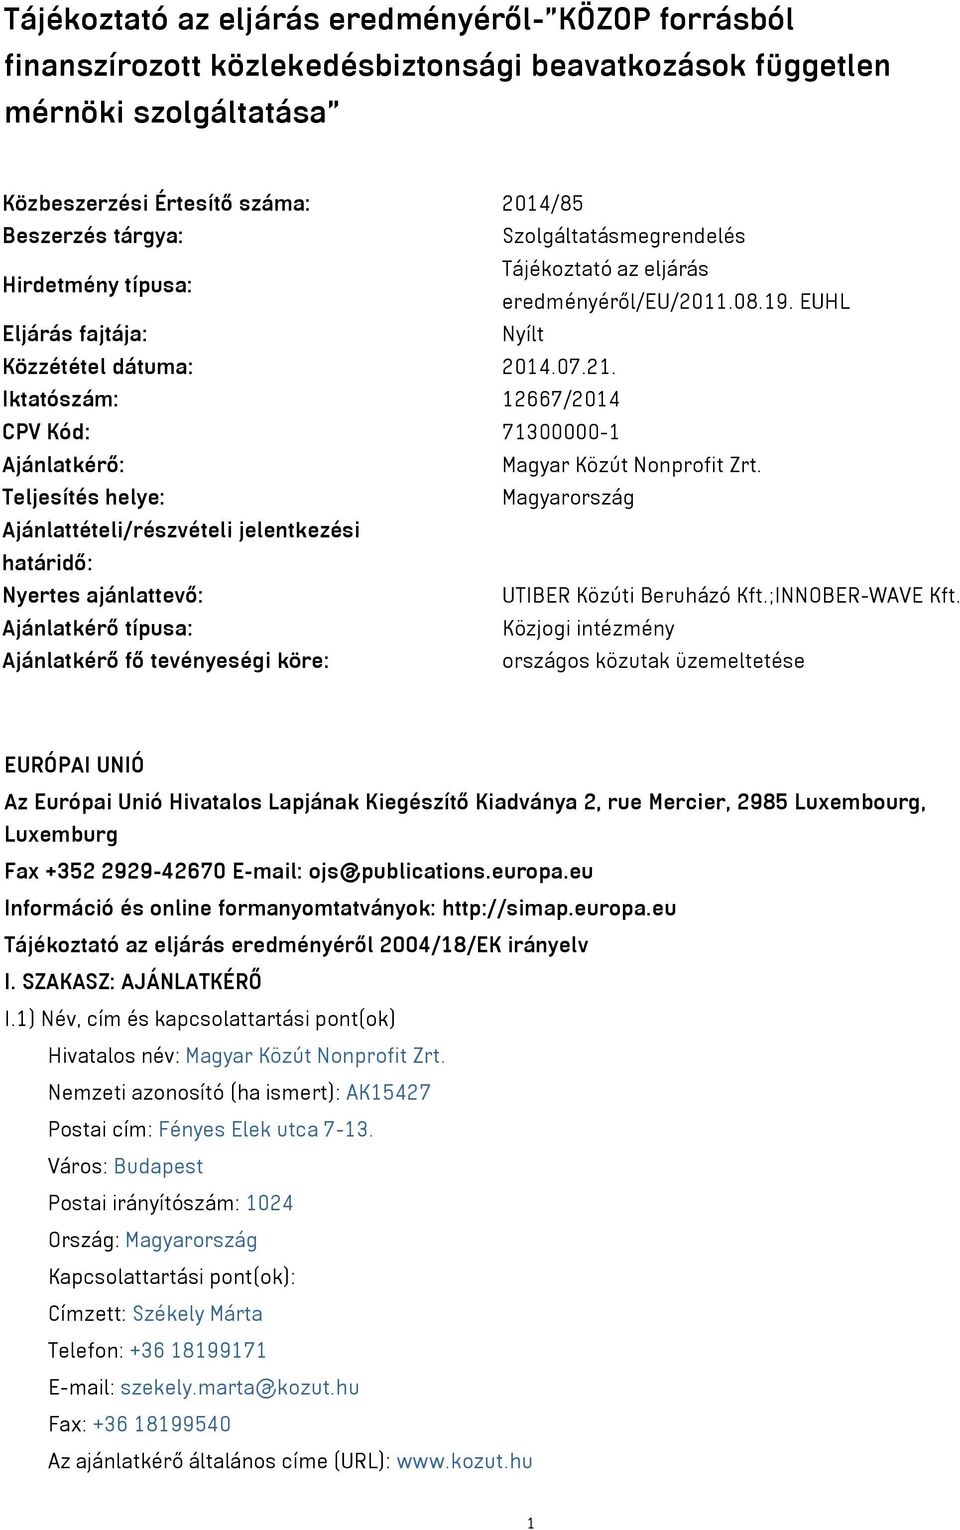 Iktatószám: 12667/2014 CPV Kód: 71300000-1 Ajánlatkérő: Magyar Közút Nonprofit Zrt.